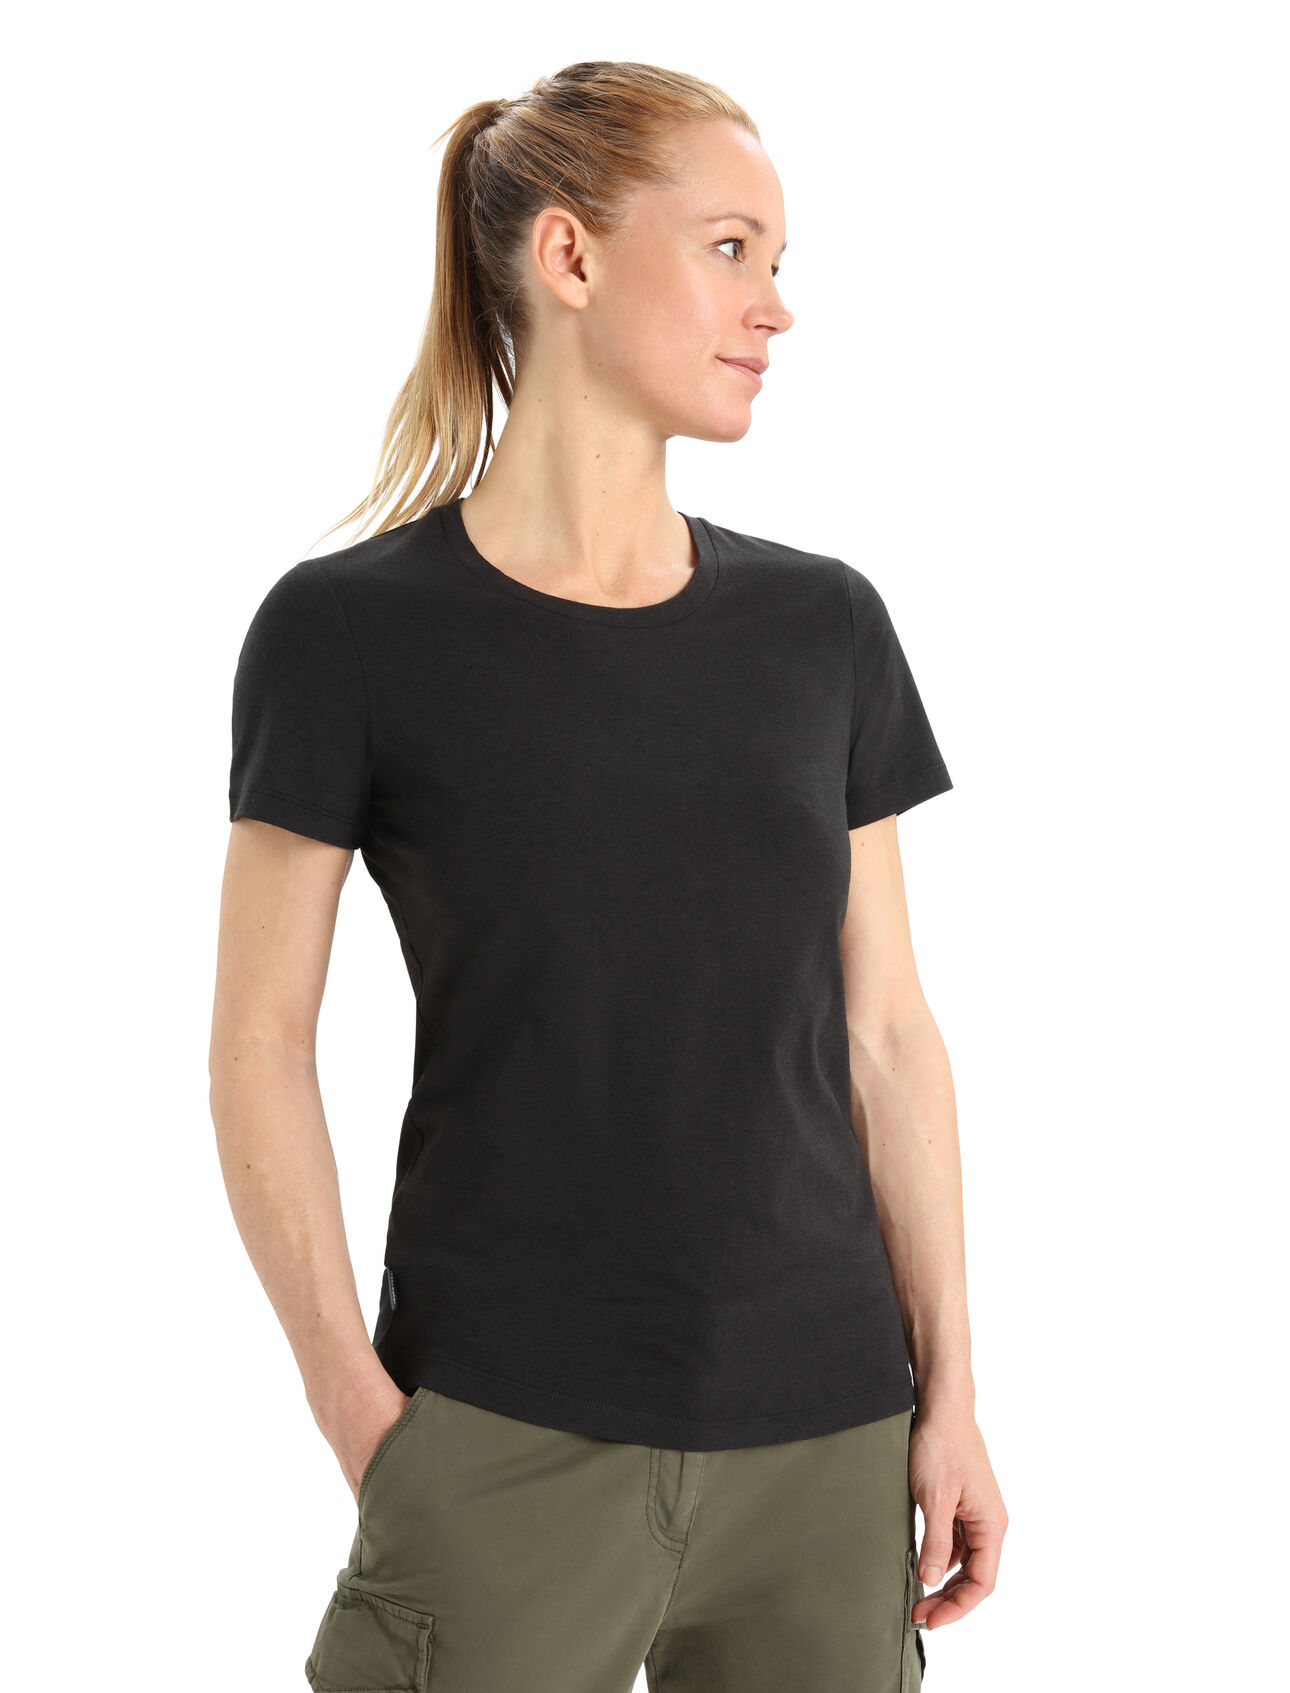 Merinomix Central Classic T-Shirt Damen Ein vielseitiges T-Shirt für jeden Tag, das dich überall hin mit Komfort begleitet, das Central Classic T-Shirt besteht aus einer nachhaltigen Mischung aus natürlicher Merinowolle und weicher Biobaumwolle. 